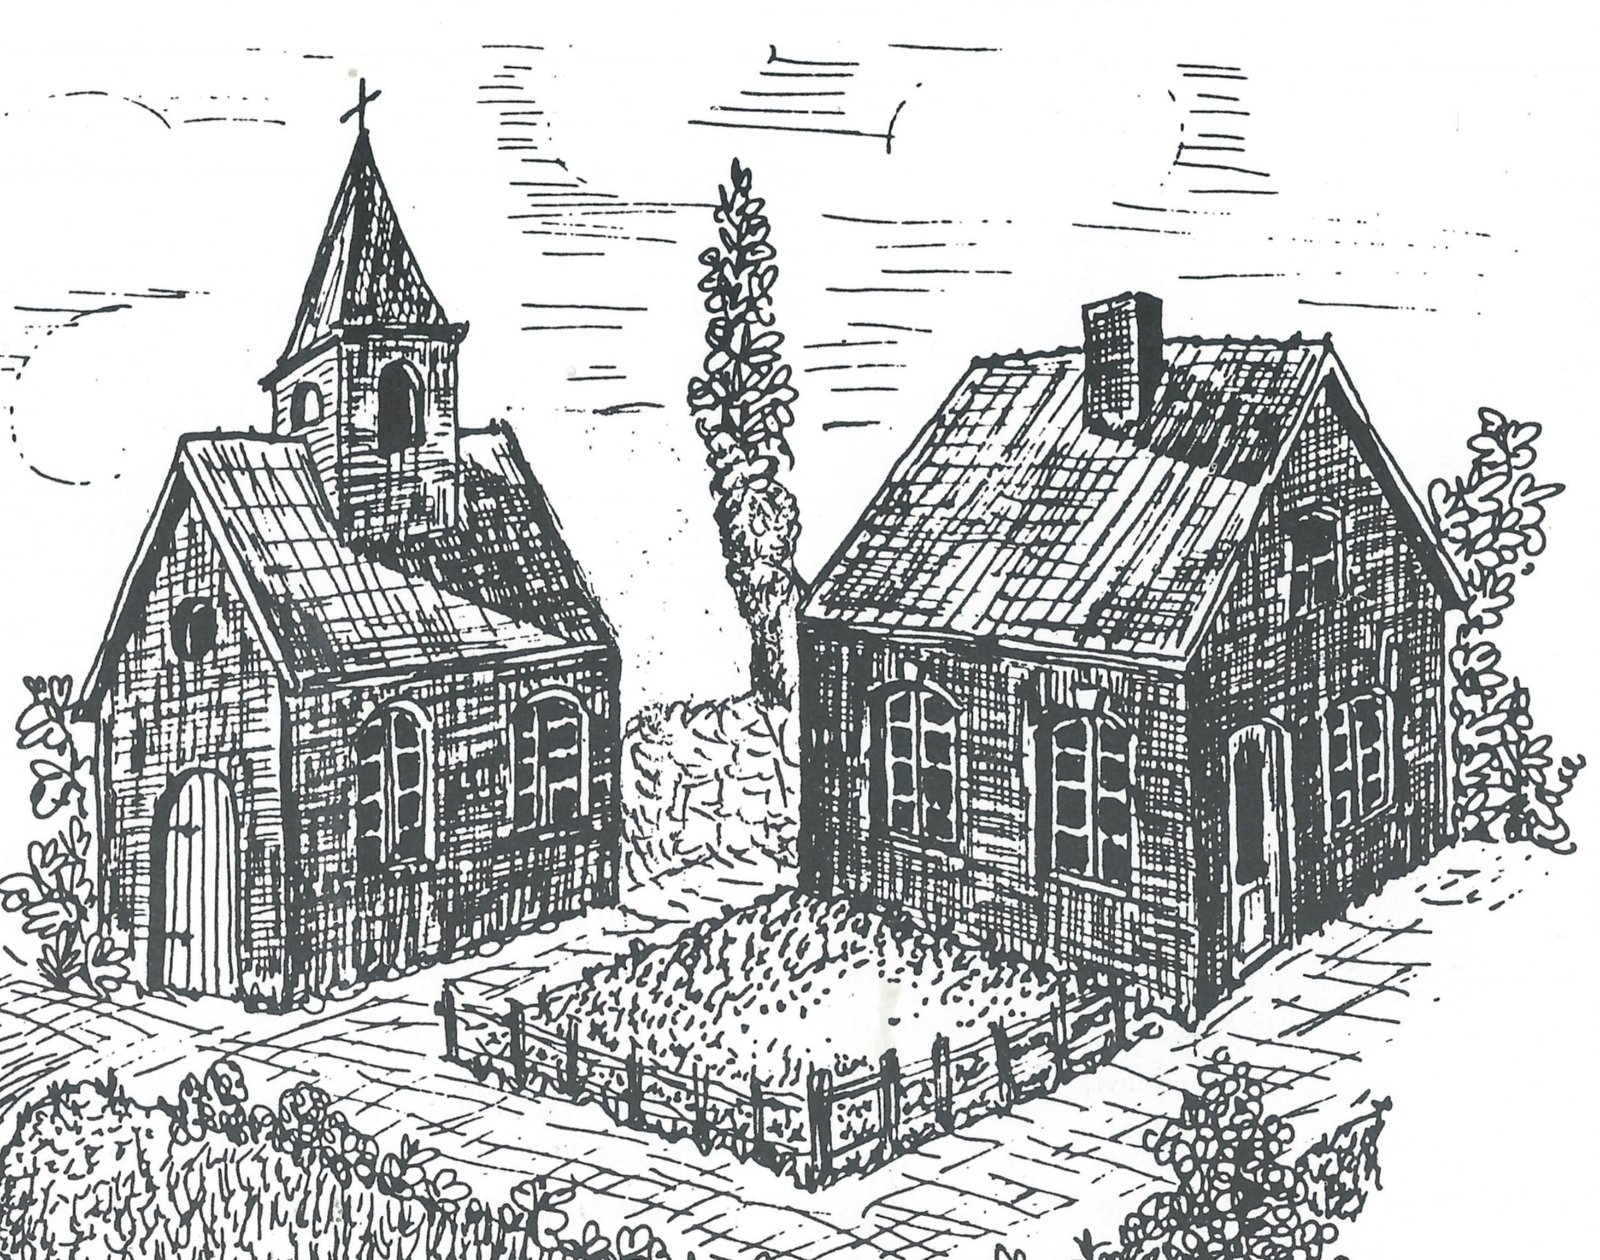 Rekonstruktion der Kapelle mit Schule (errichtet 1718) nach Unterlagen aus dem Pfarrarchiv Immendorf